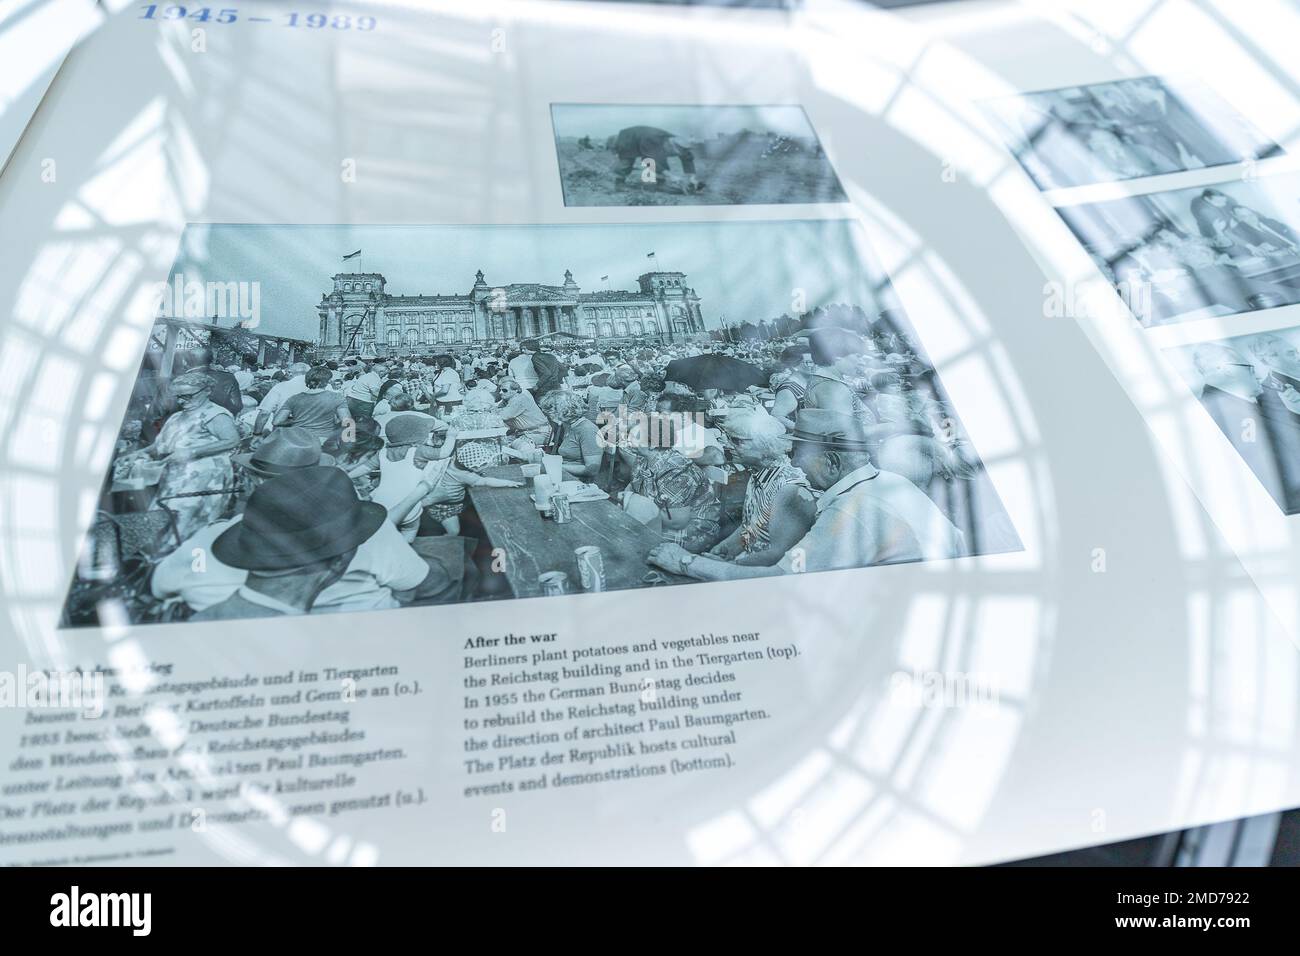 In der Bundestag-Kuppel. Reichstagsgebäude in Berlin. Alte historische Fotos und Zeitungsausstellung im Dom des deutschen parlaments. Stockfoto